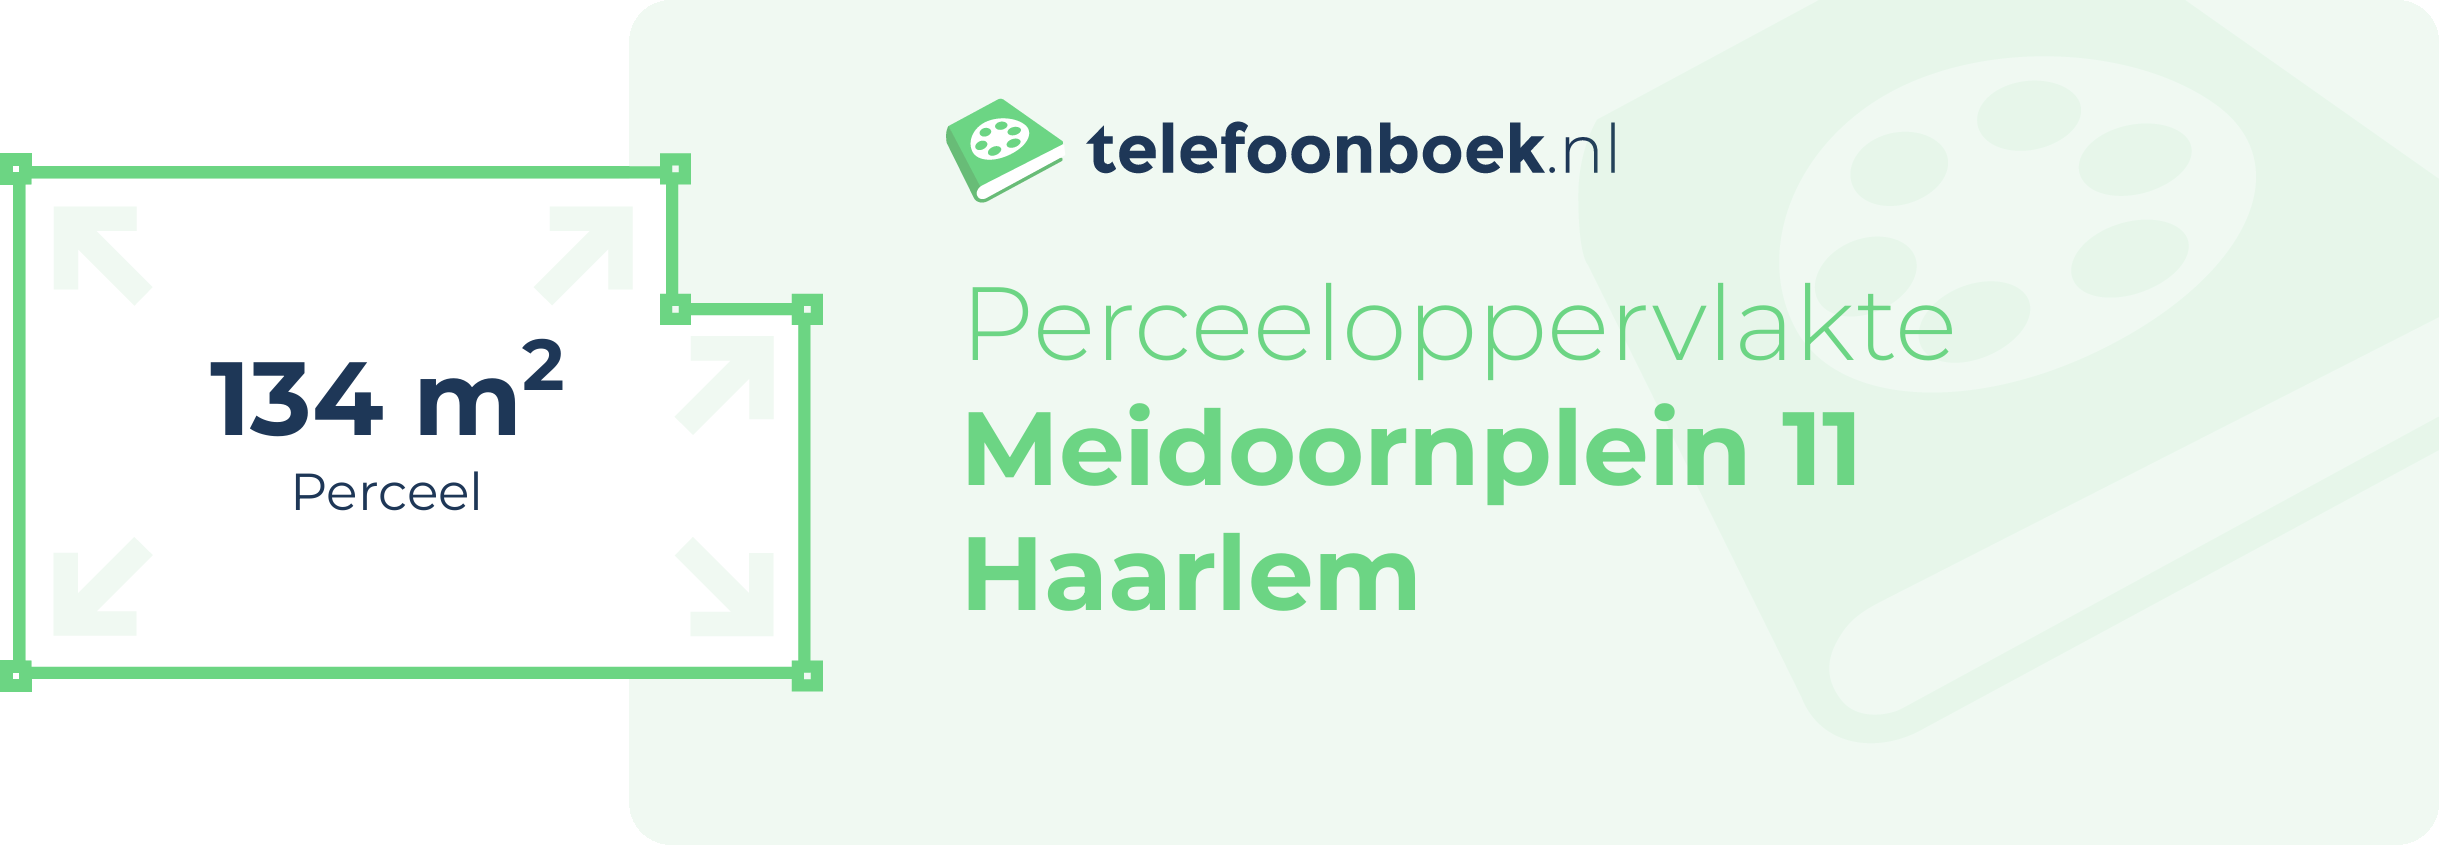 Perceeloppervlakte Meidoornplein 11 Haarlem